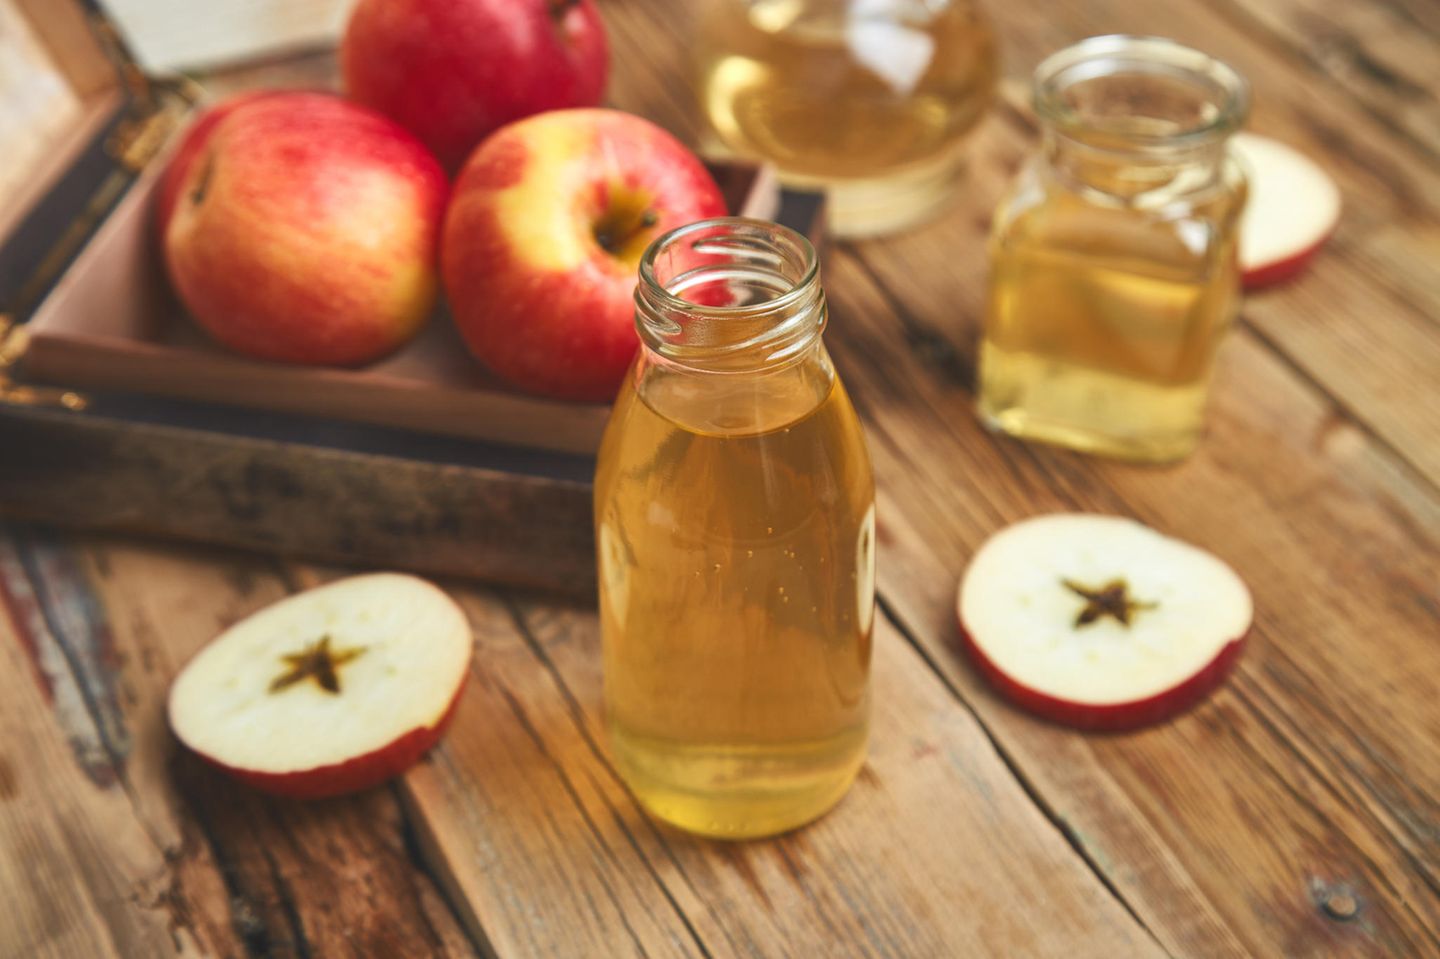 Fieber senken: Apfelessig hilft bei erhöhter Temperatur